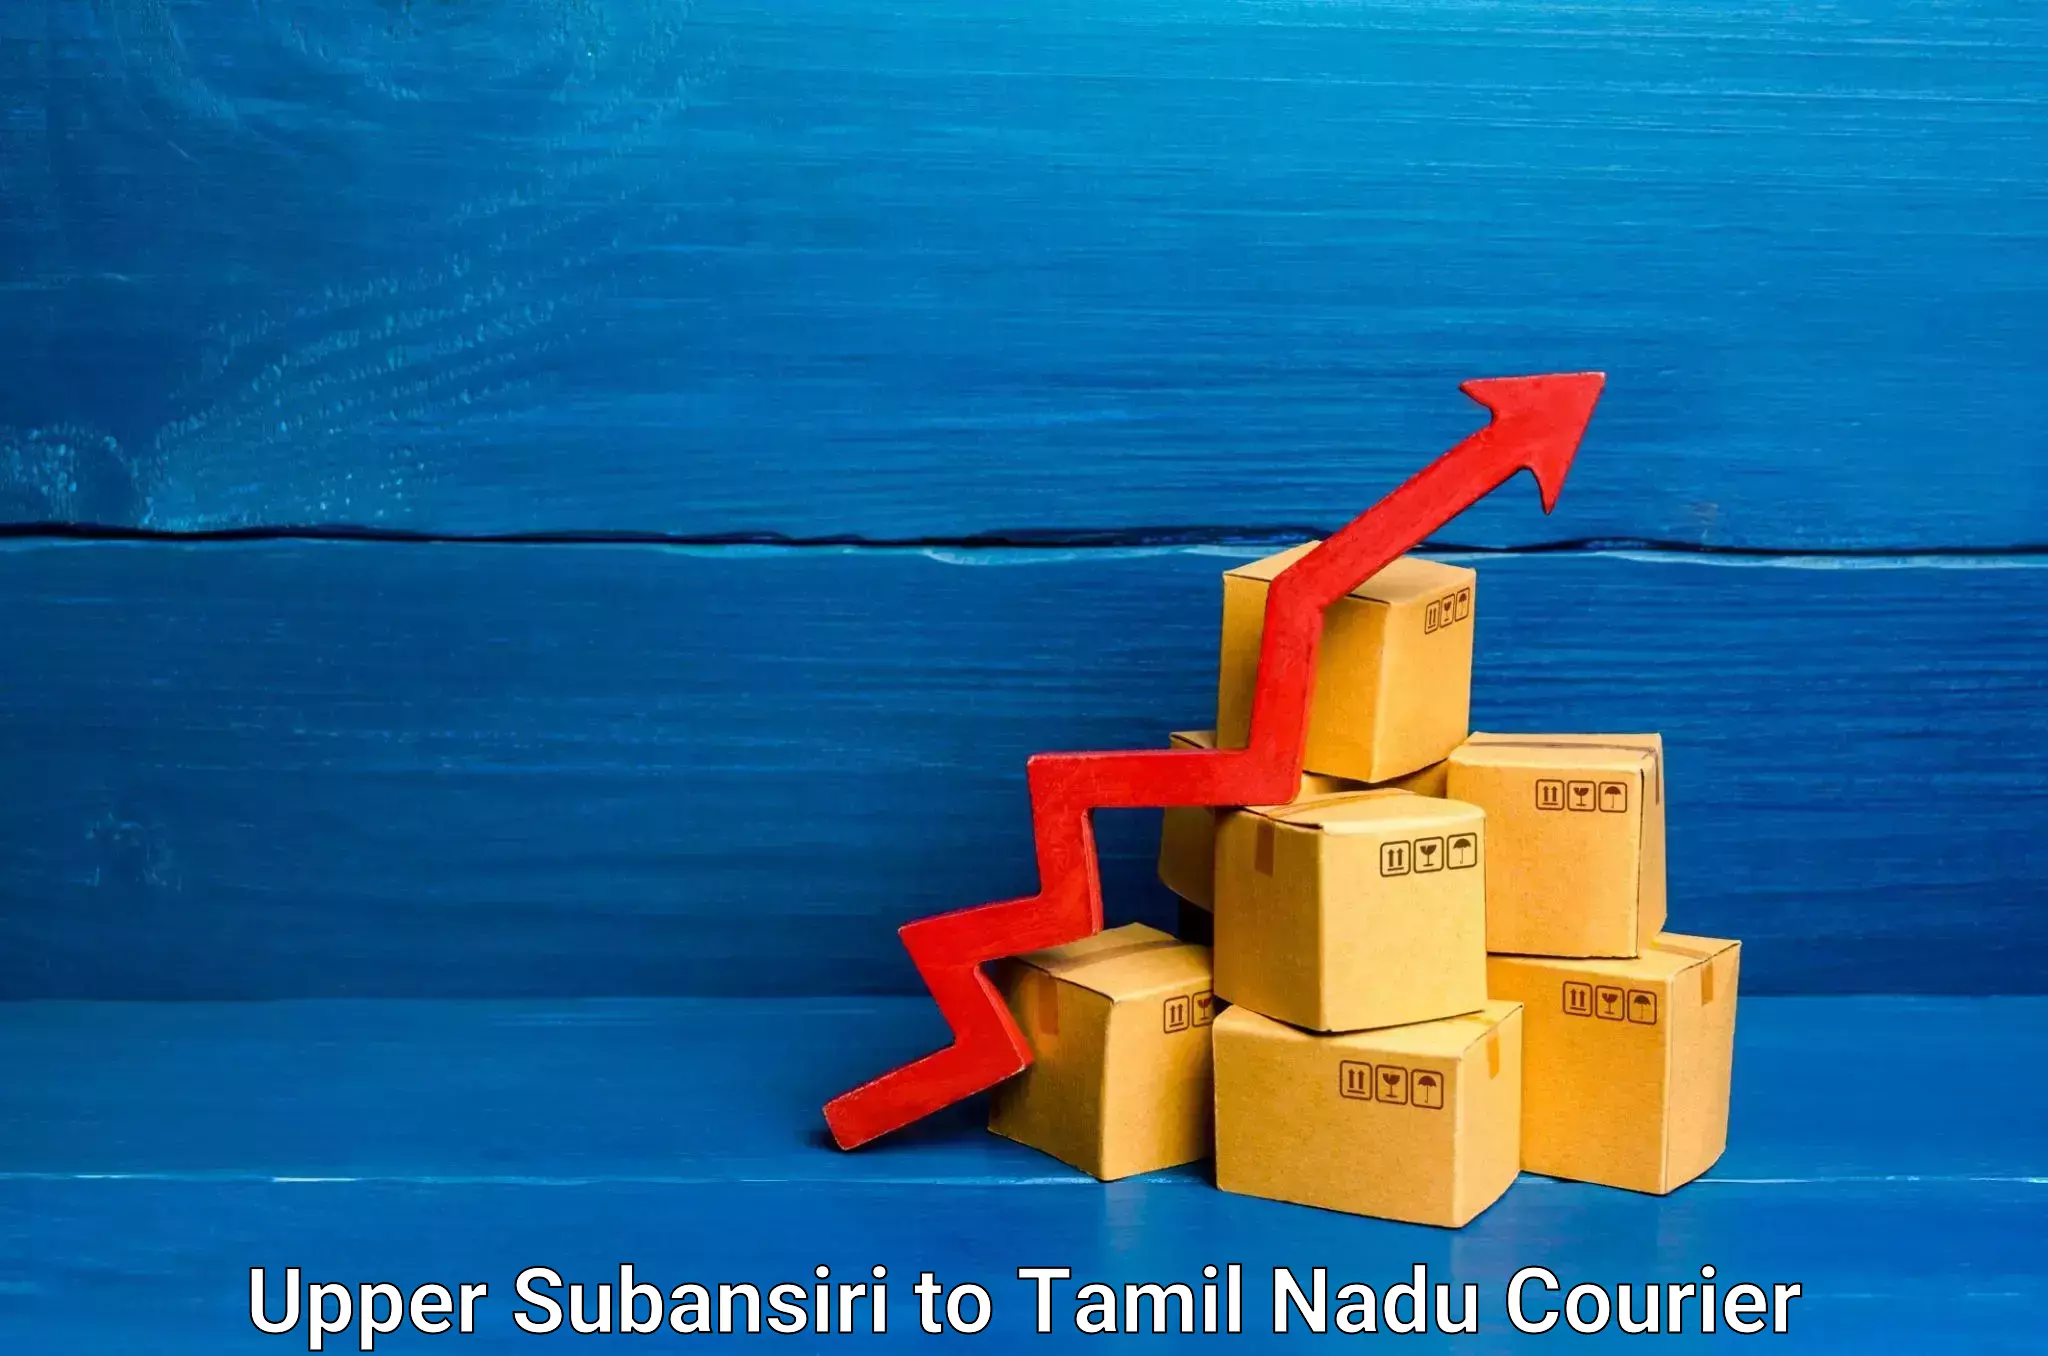 Innovative logistics solutions in Upper Subansiri to Villupuram